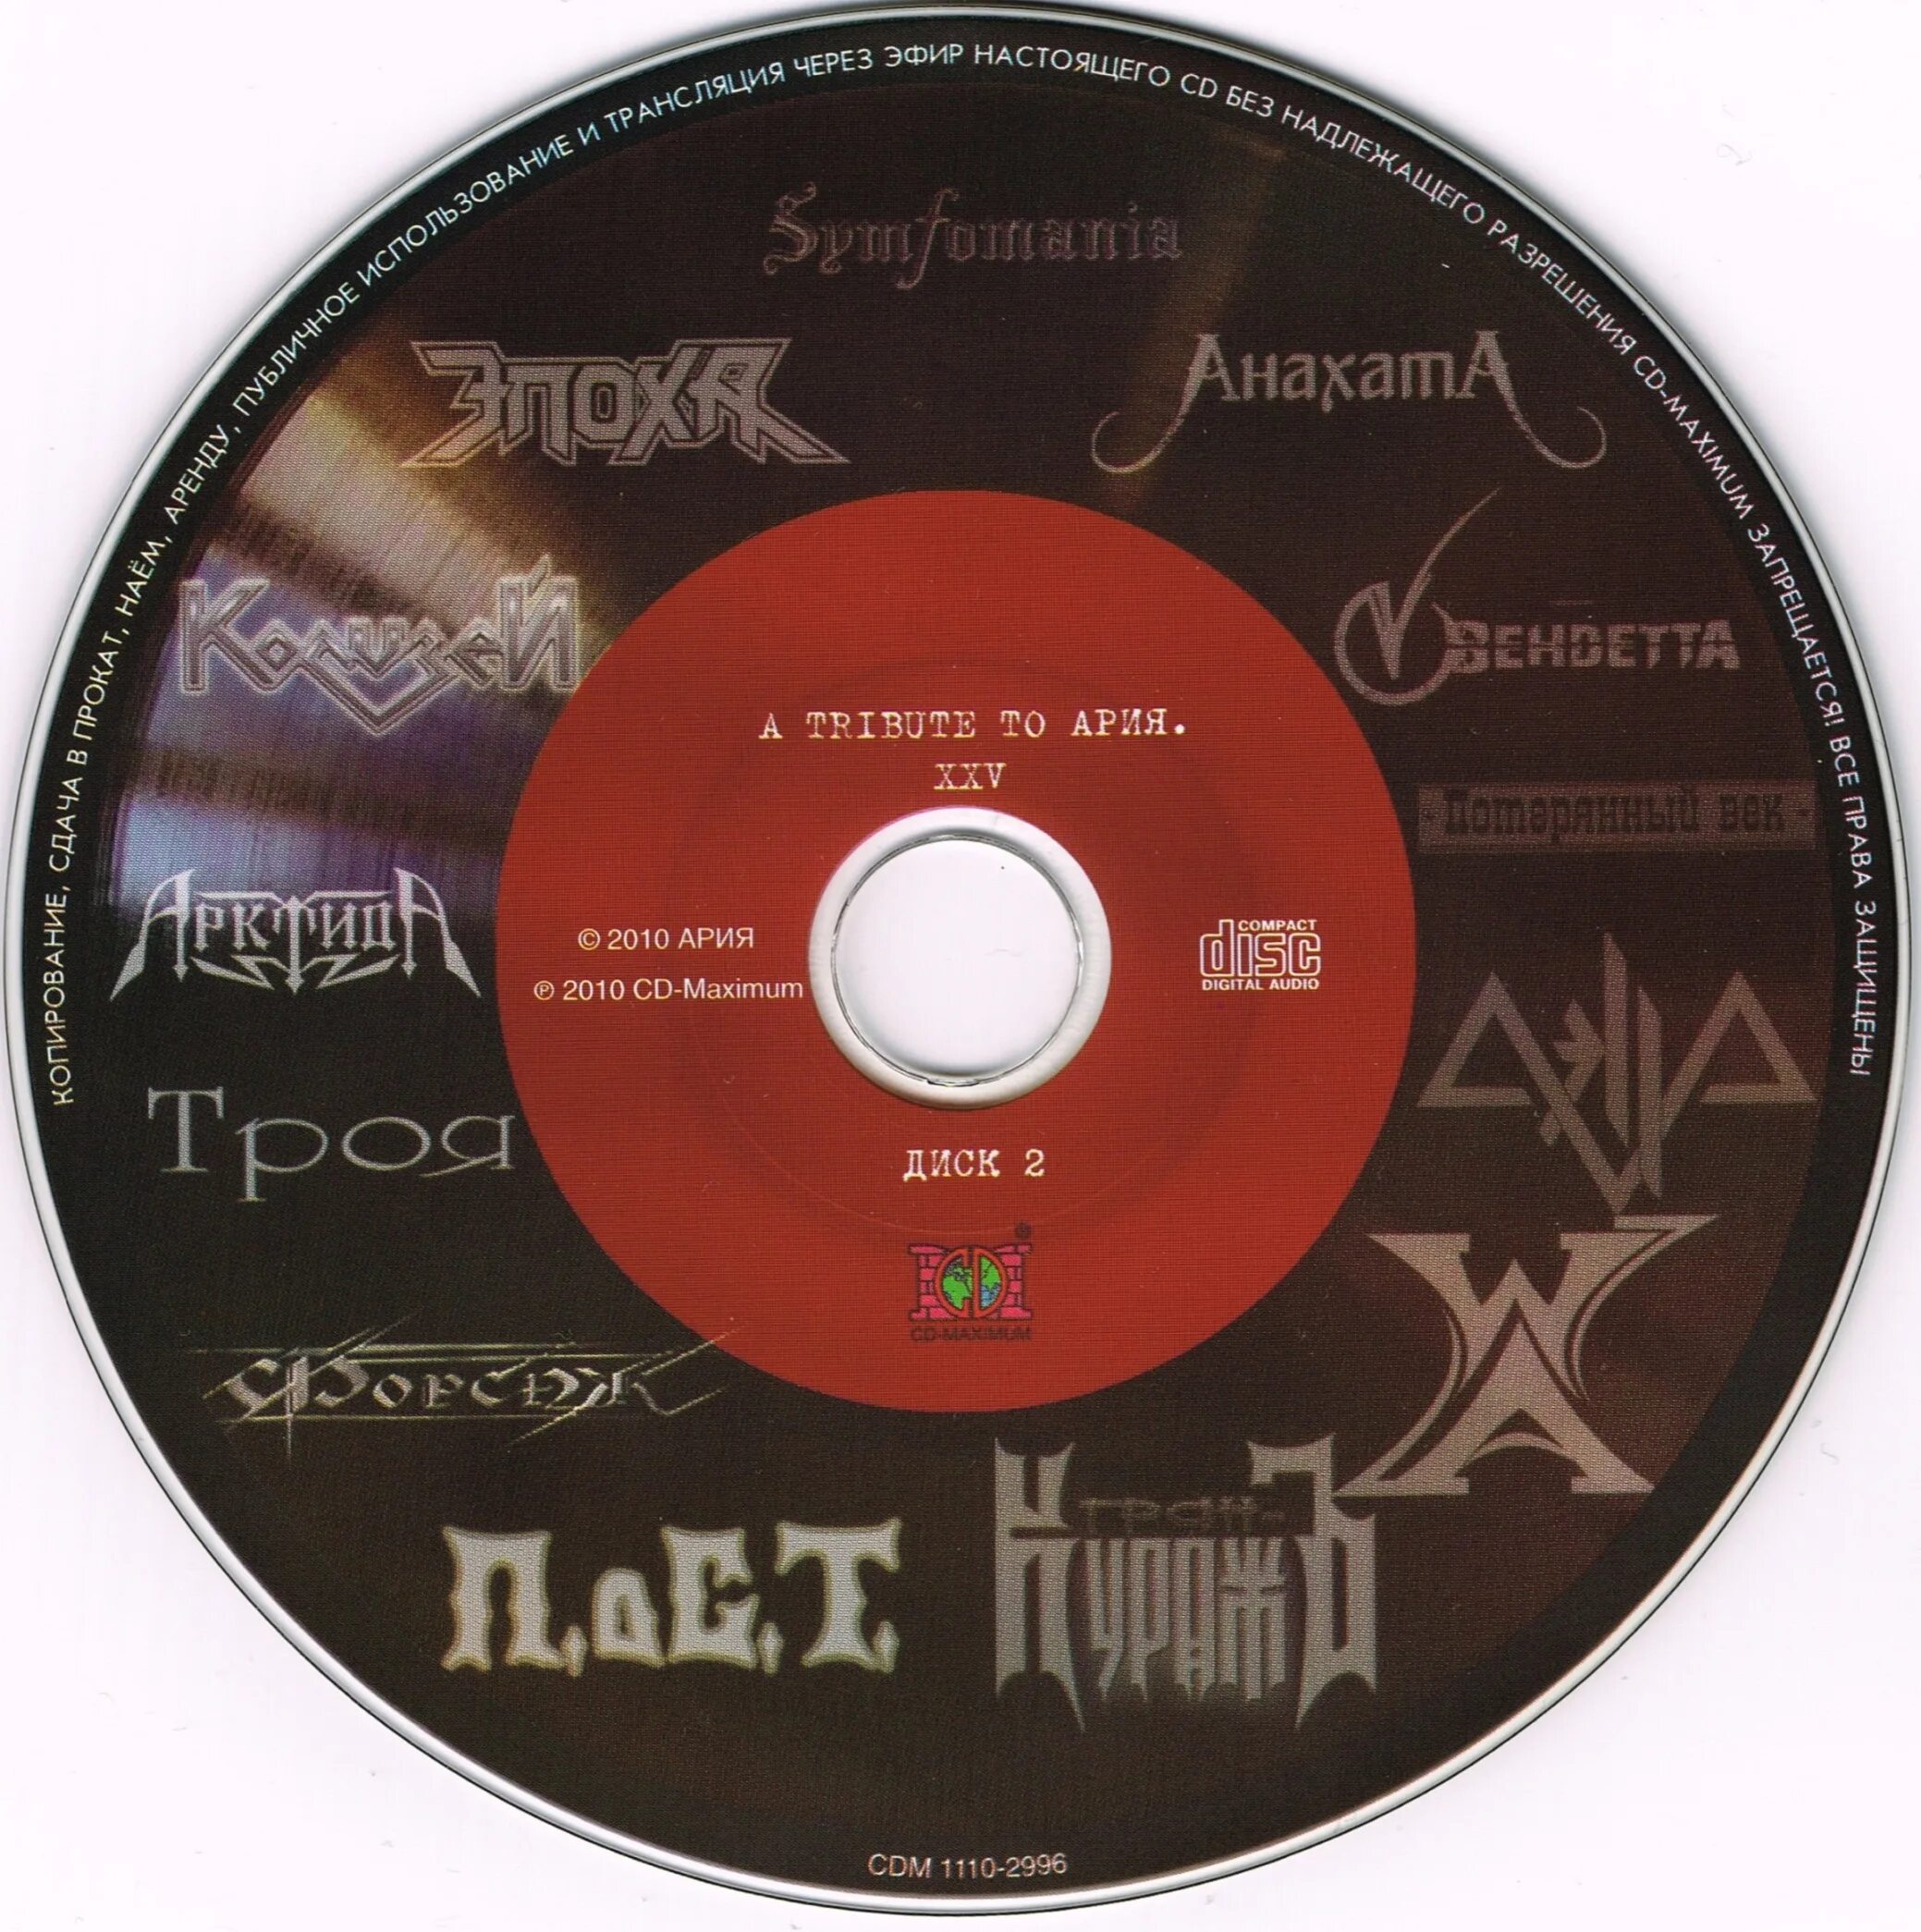 Фрагмент арии. A Tribute to Ария. Ария Tribute to 2001. Tribute Ария XXV. Ария трибьют альбом 2010.